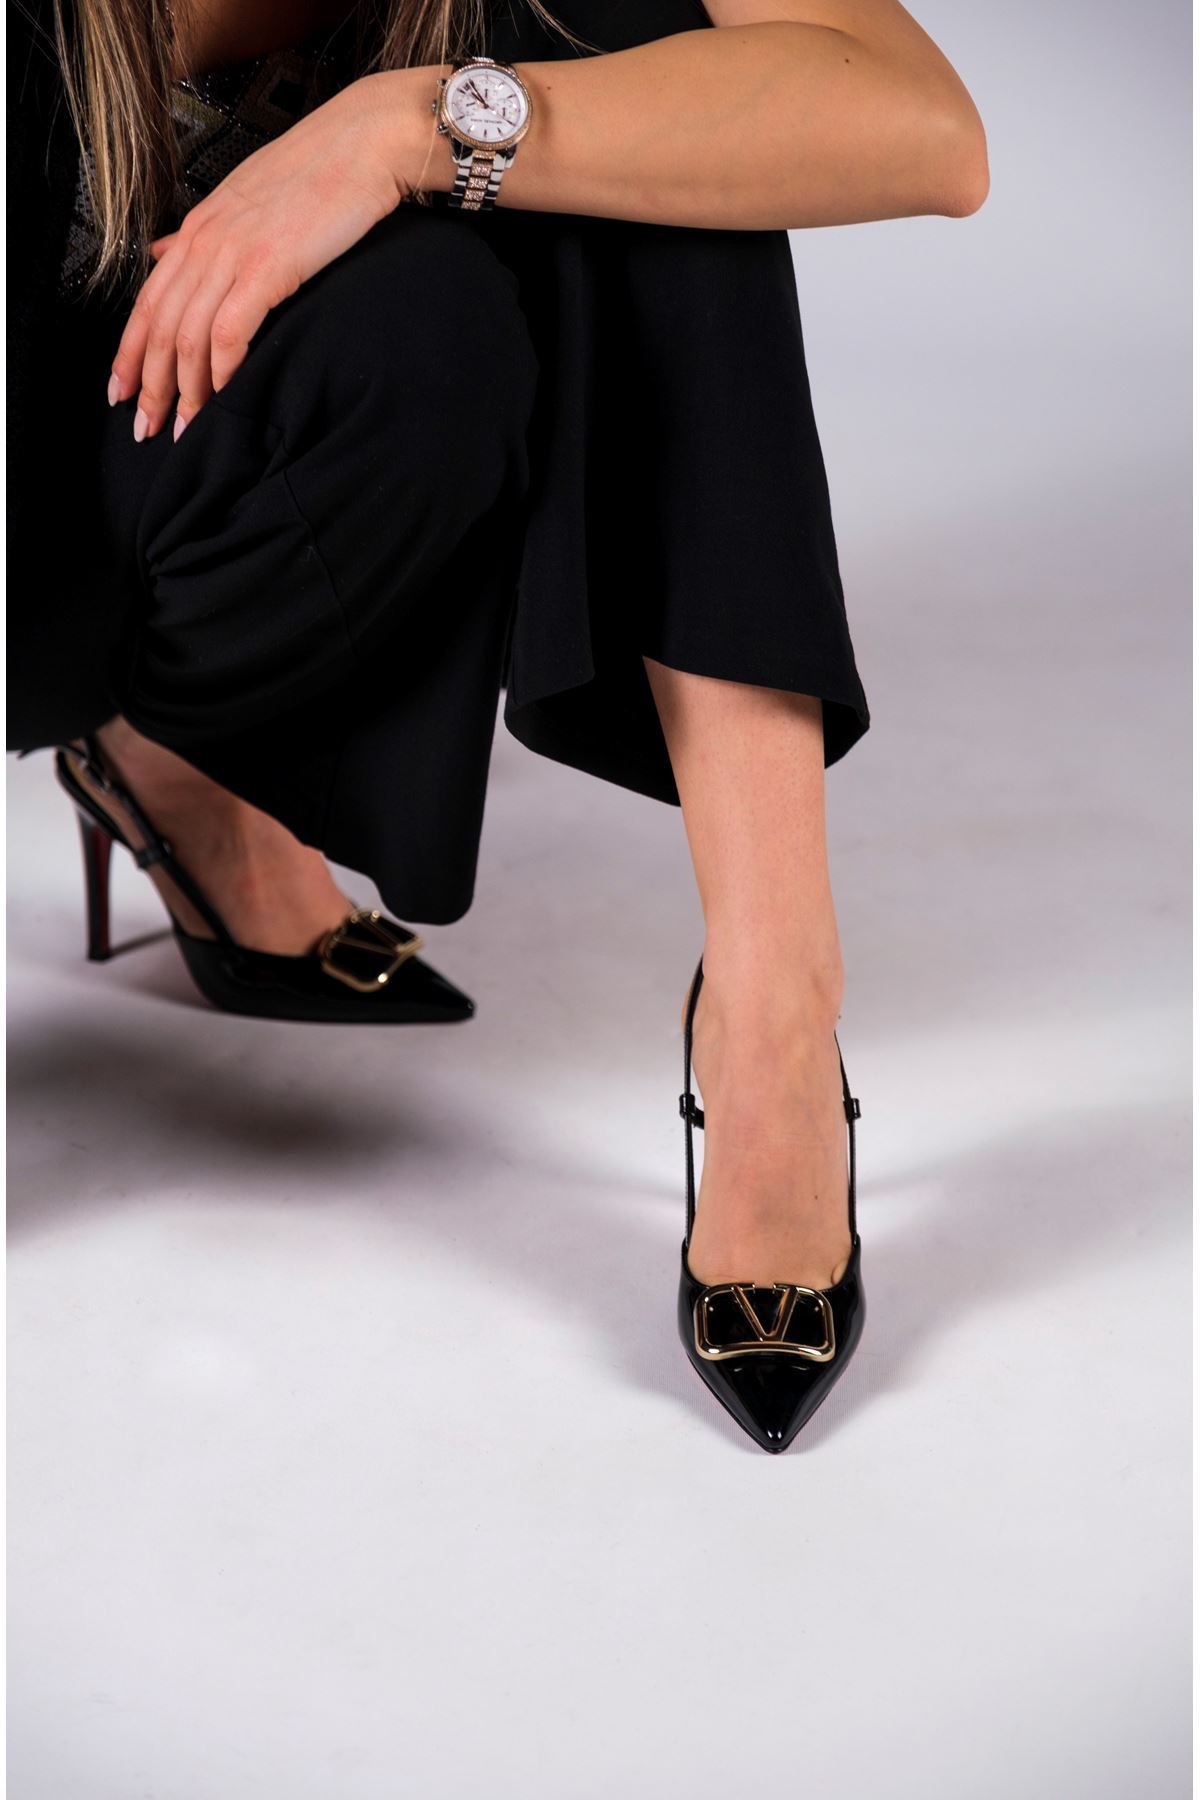 Siyah Rugan Tokalı Kadın Topuklu Özel Tasarım Ayakkabı Stiletto Kajino